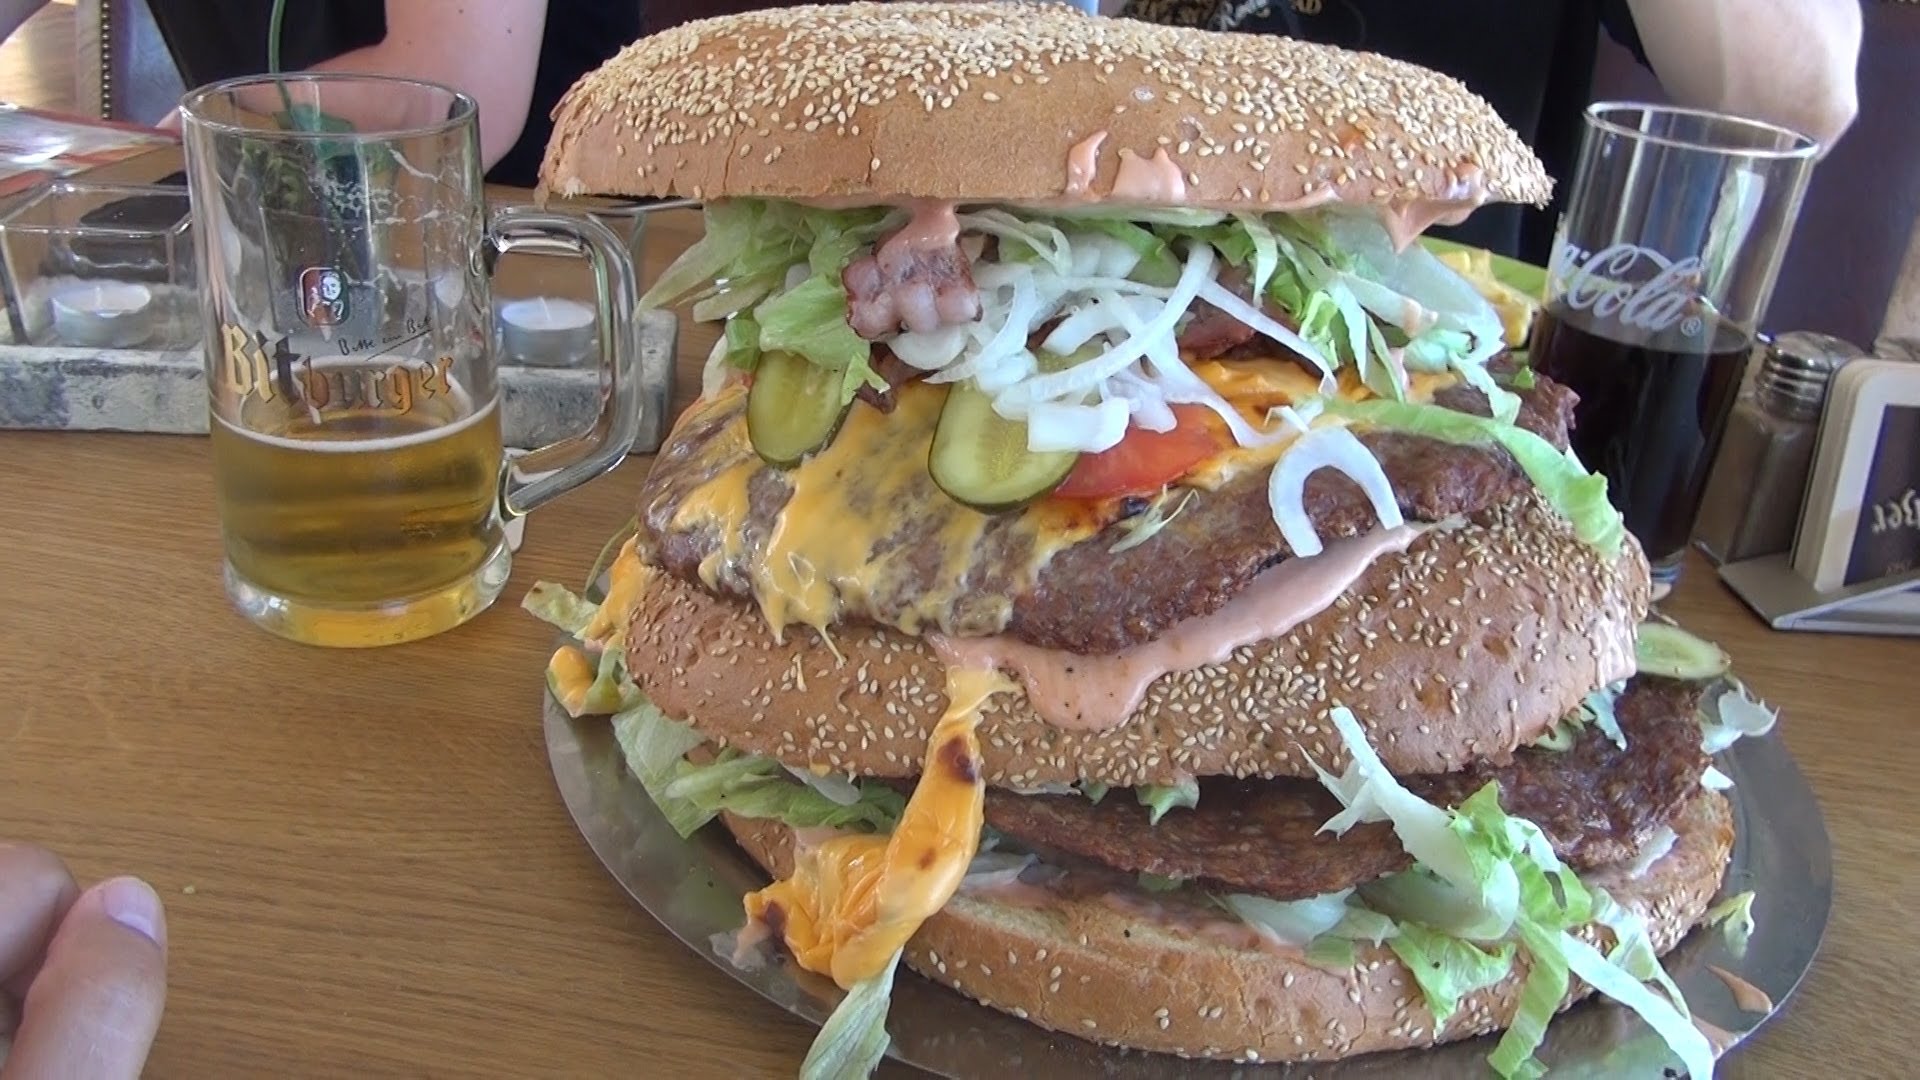 Zgłodniałeś? Polecamy udać się do Redo XXL w Berlinie i zasmakować Mega Burgera XXXL i Giant Burgera XXXXL. Nie do przejedzenia.